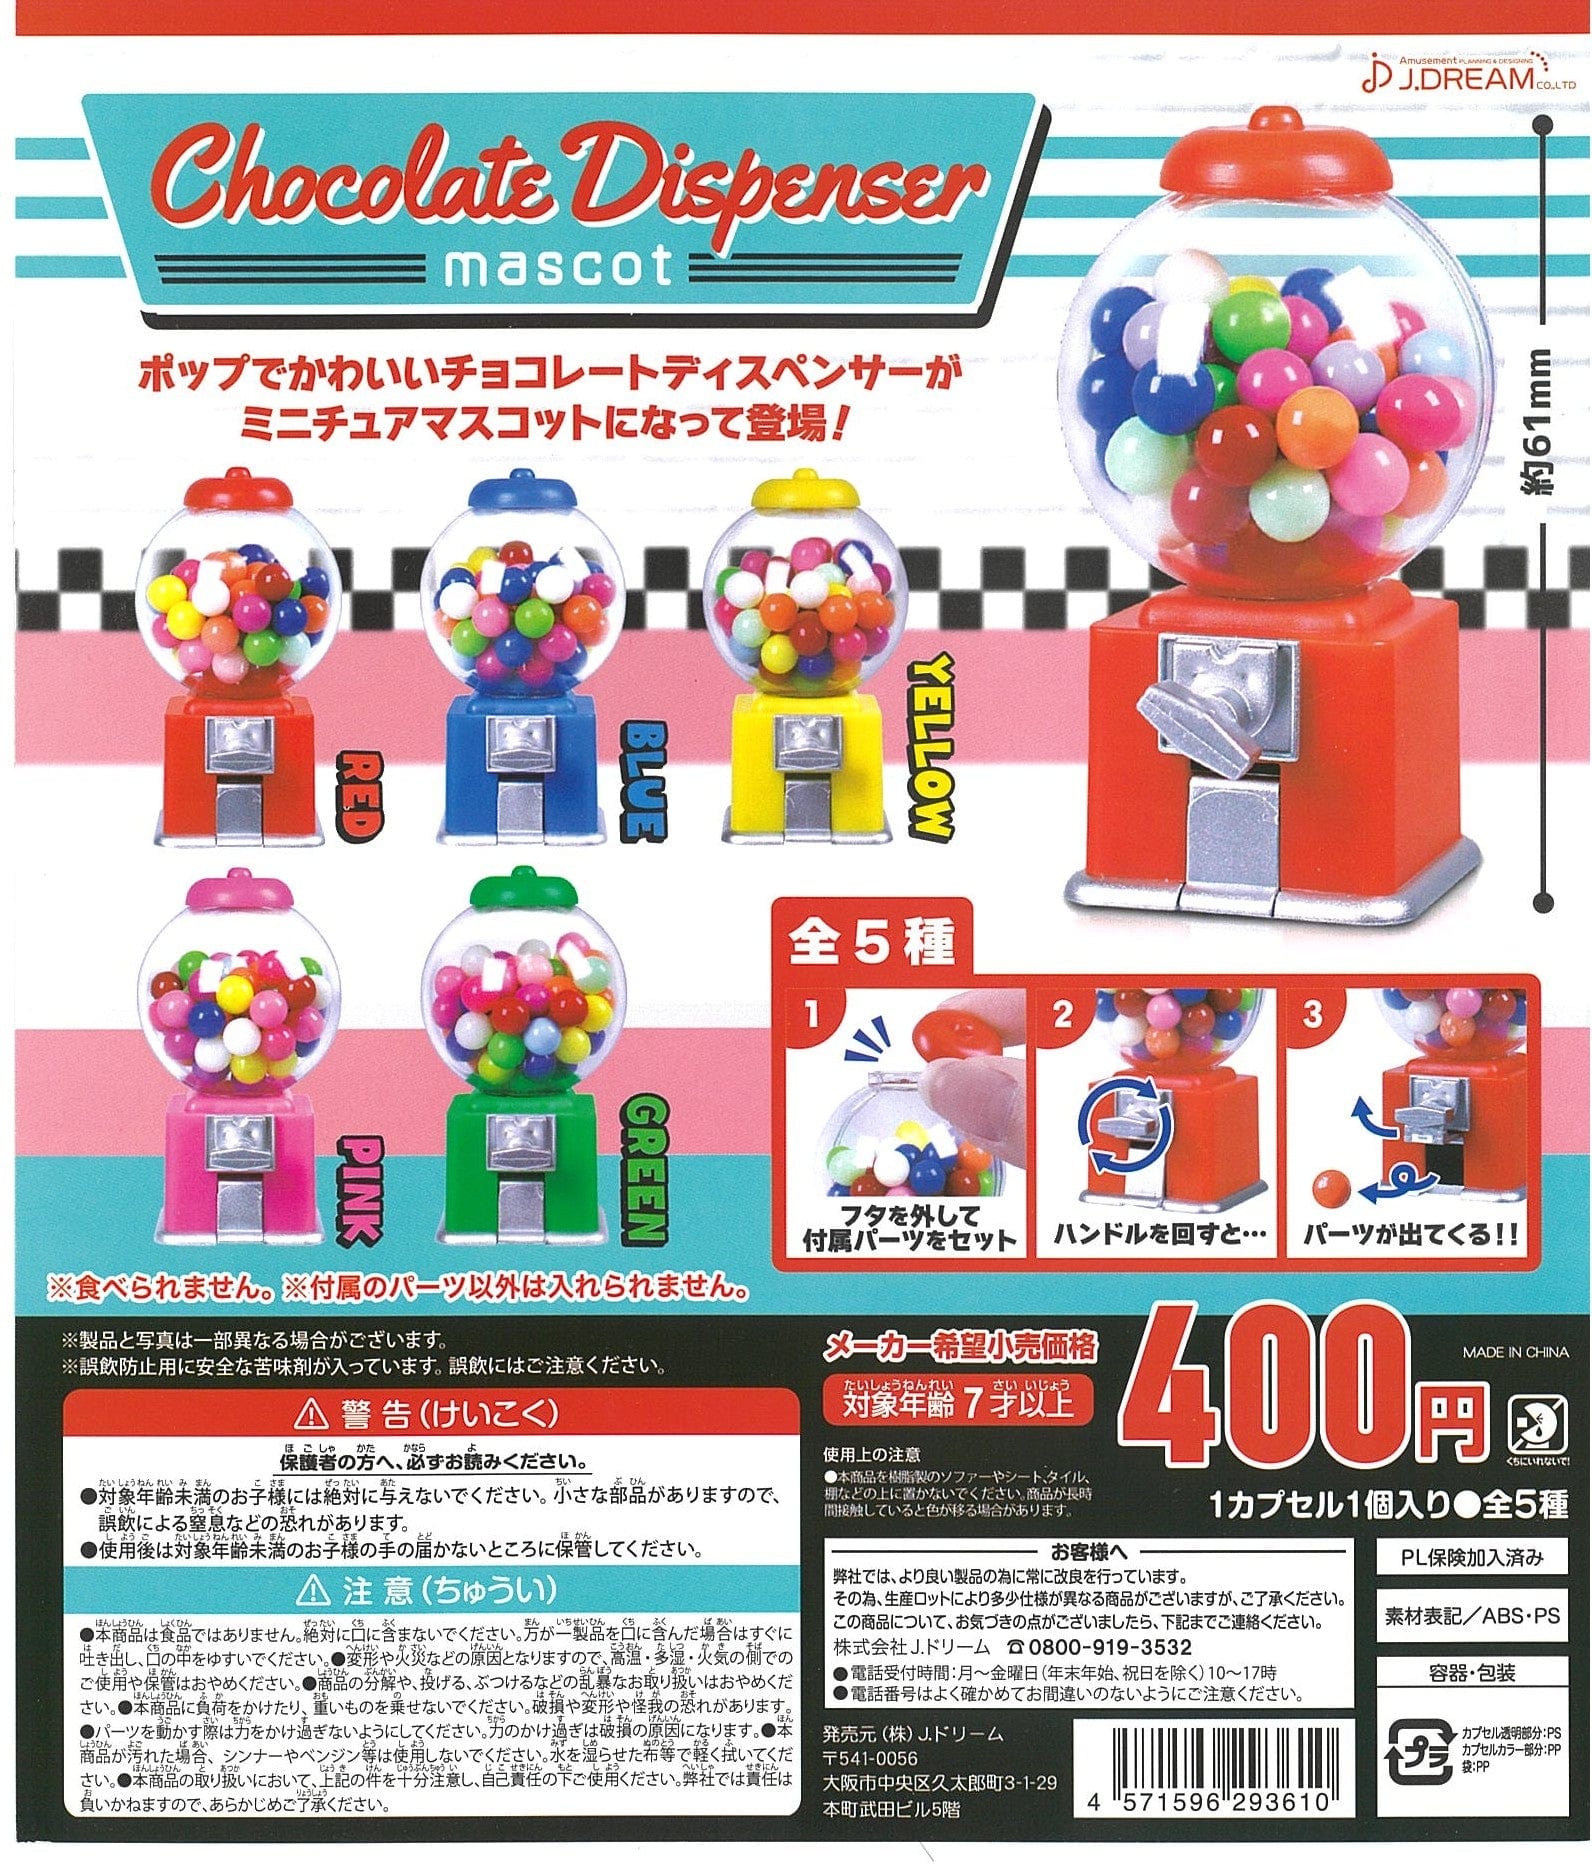 J.DREAM CP2337 Chocolate Dispenser Mascot